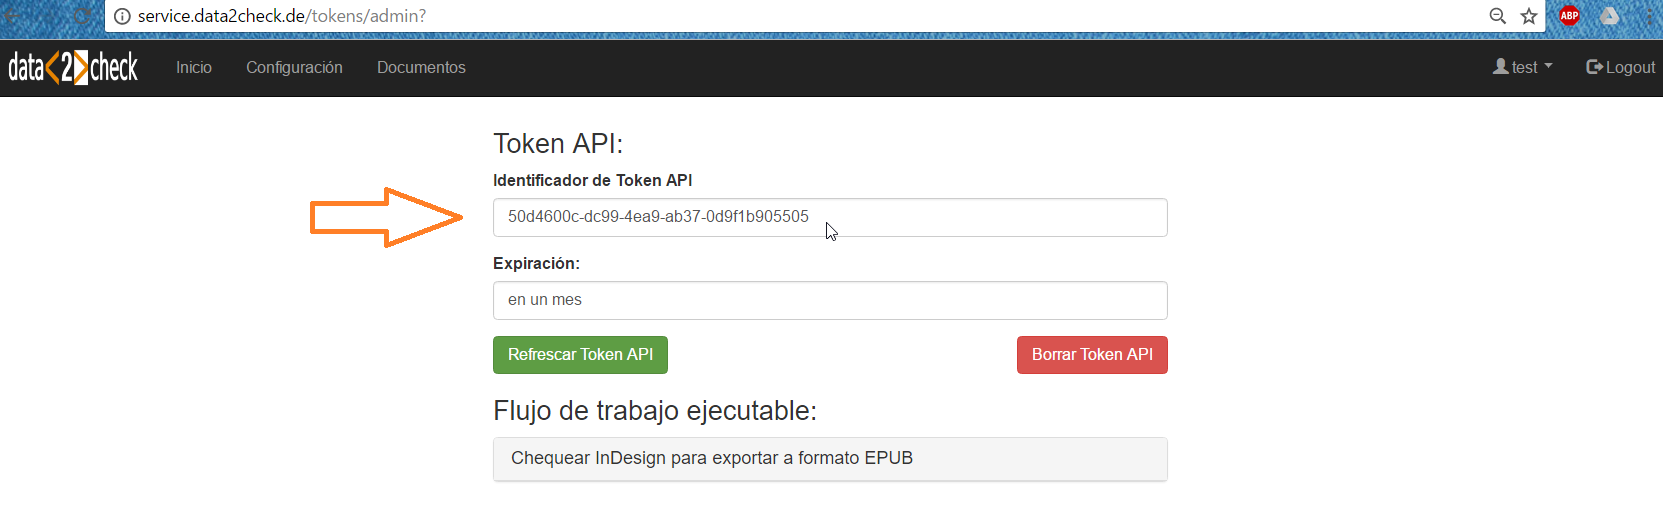 Token API activo